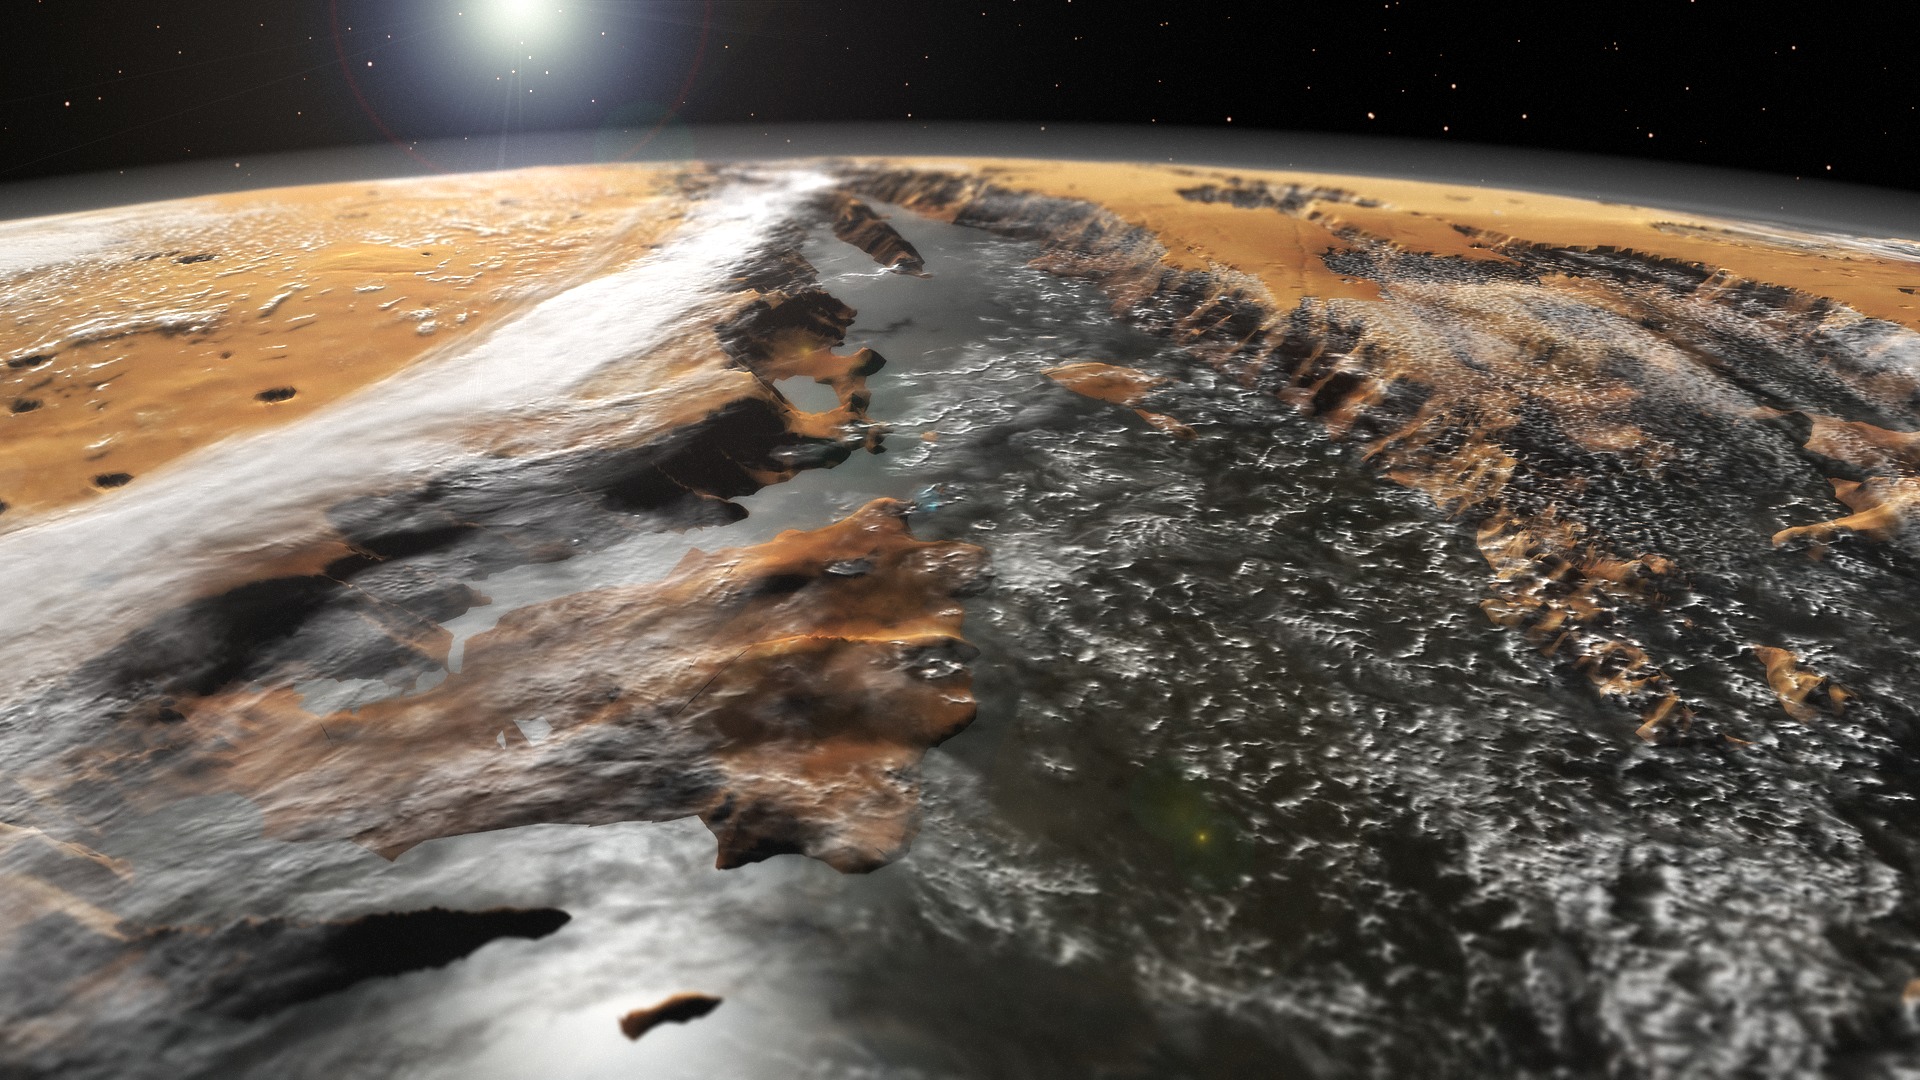 Большой поверхности а также. Долина Маринера на Марсе. Поверхность Марса Долина Маринера. Mariner (Долина Маринер Марс. Долина Маринера на Марсе изображение.